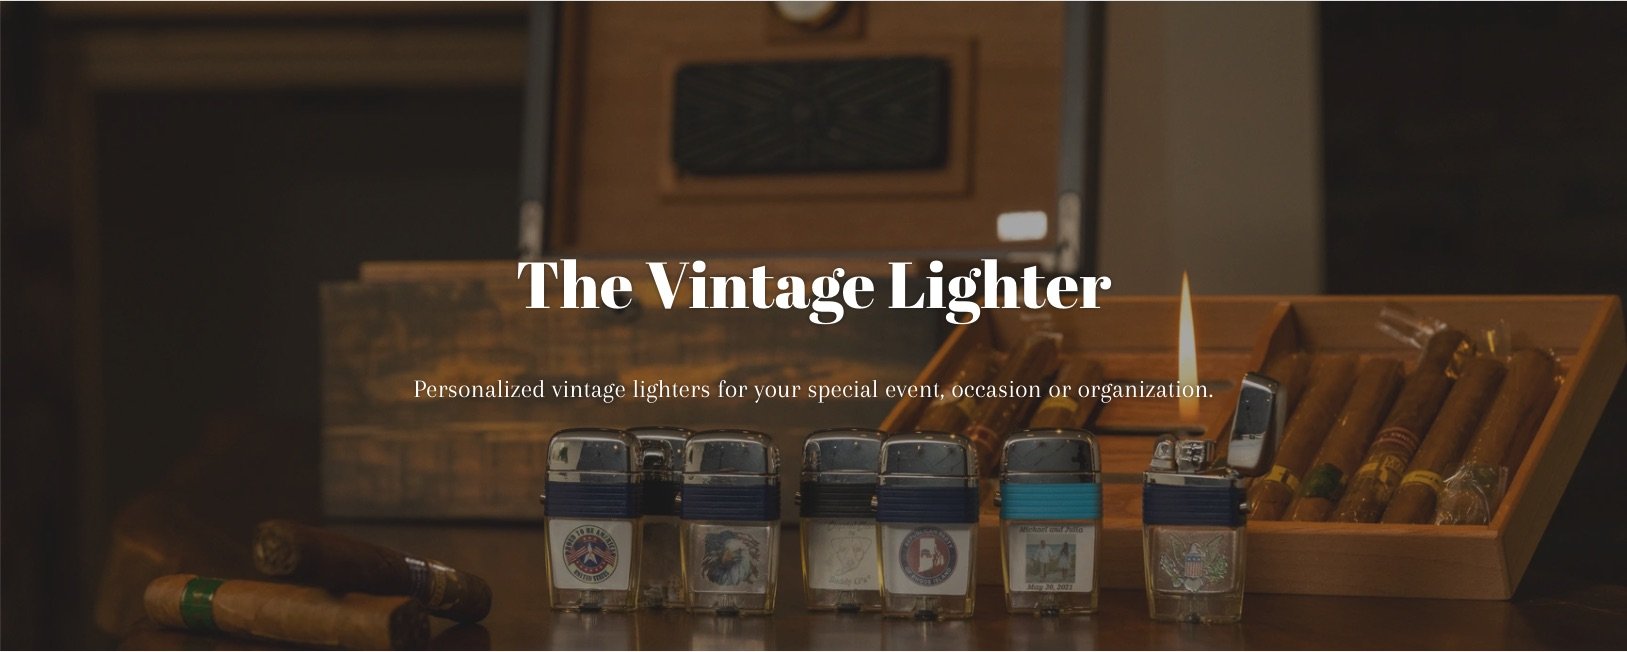 The Vintage Lighter